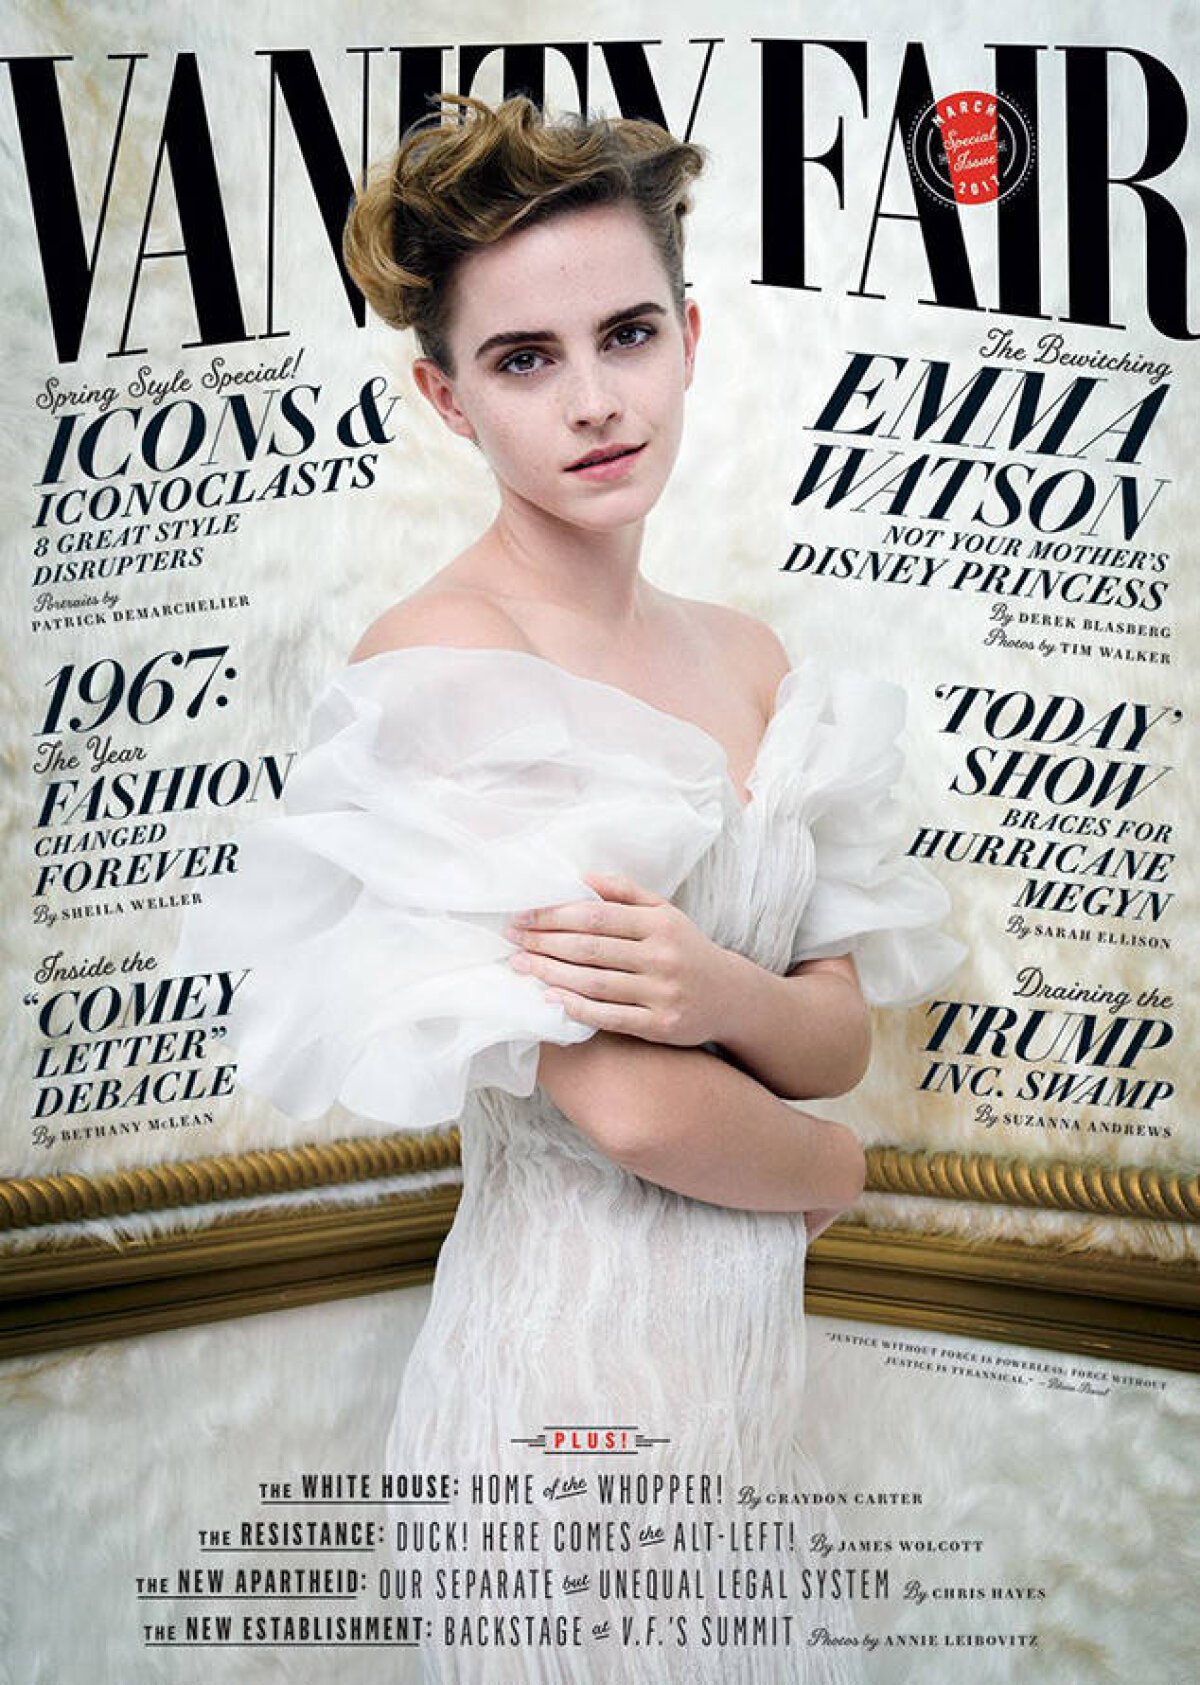 FOTO În sfârșit, dezbrăcată! Emma Watson a pozat în premieră topless